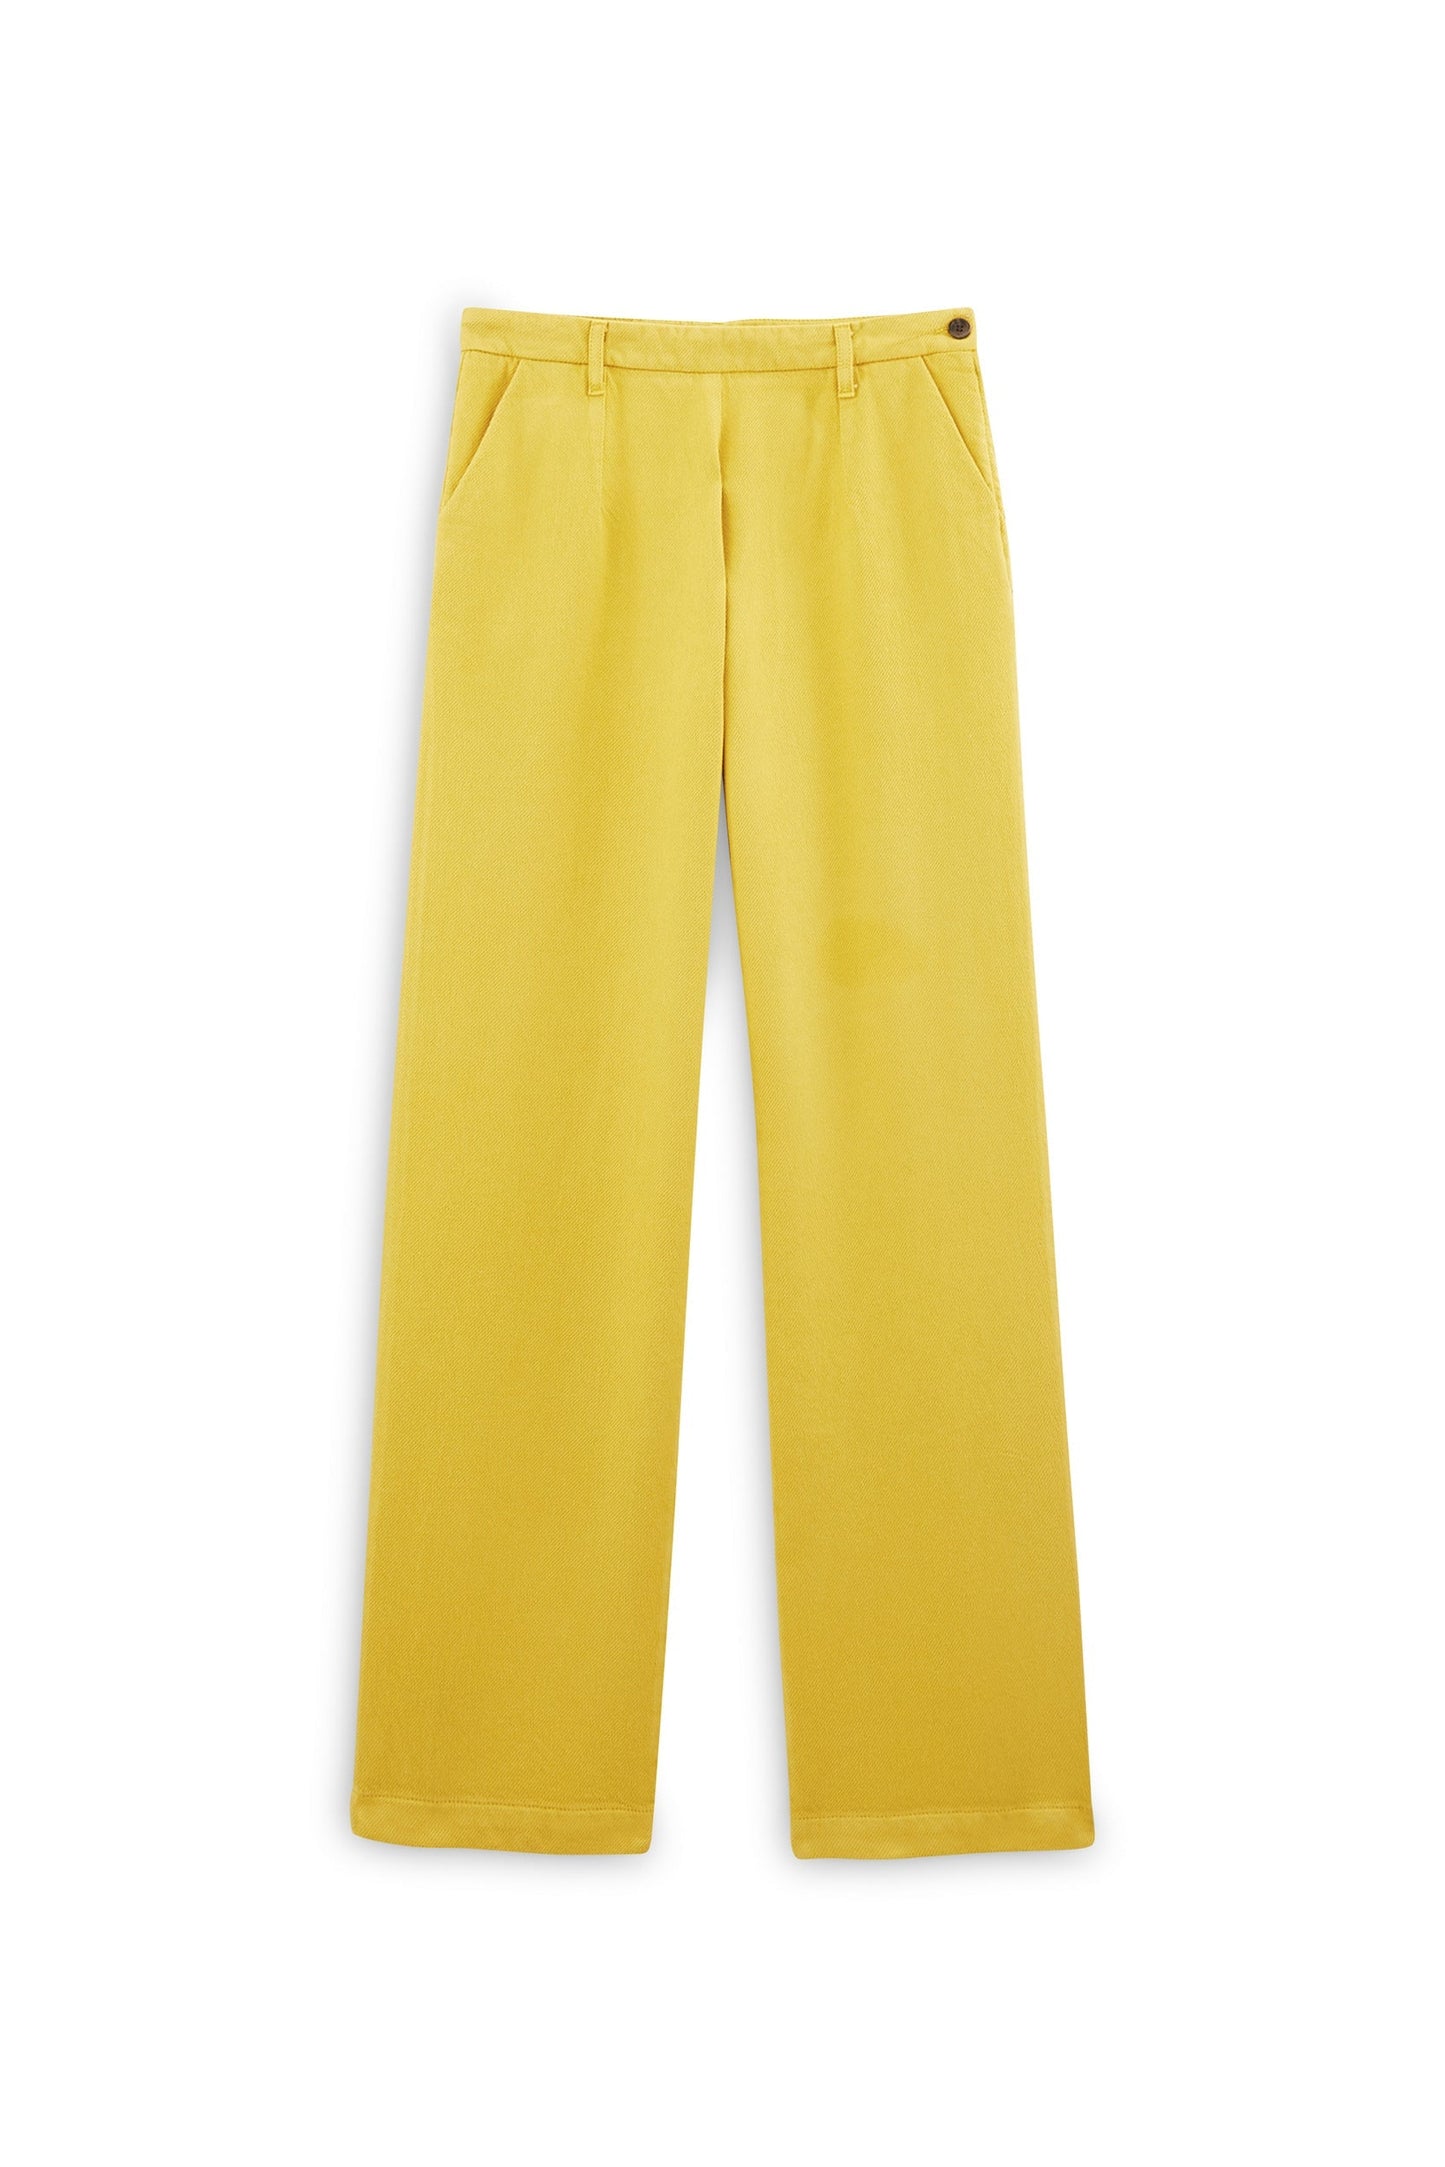 Yellow Paolo pants